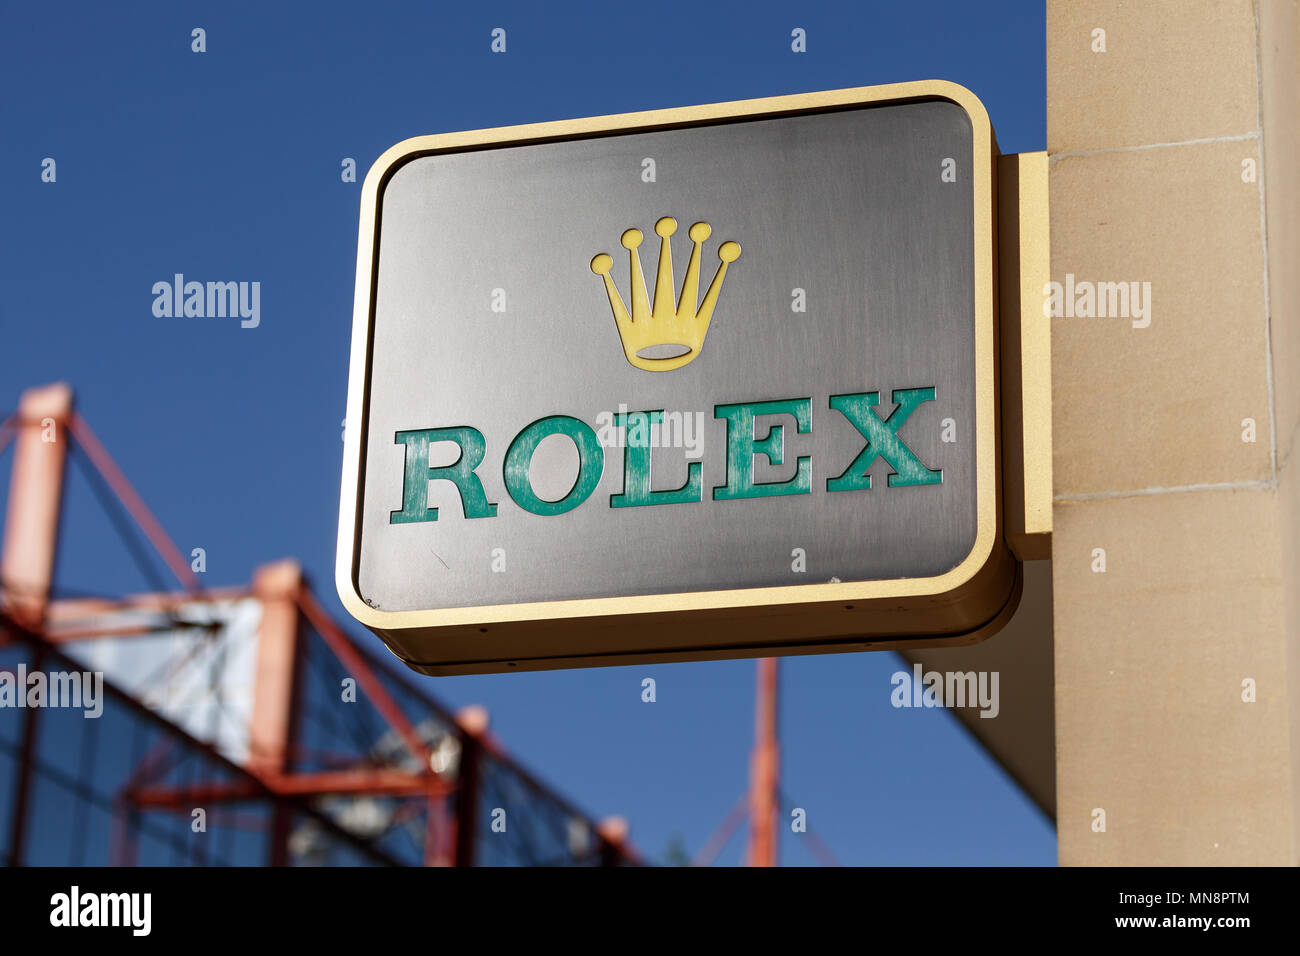 La Svizzera orologiaio di lusso Rolex, rappresentata sulla high street nel Regno Unito / logo Rolex Rolex, segno. Foto Stock